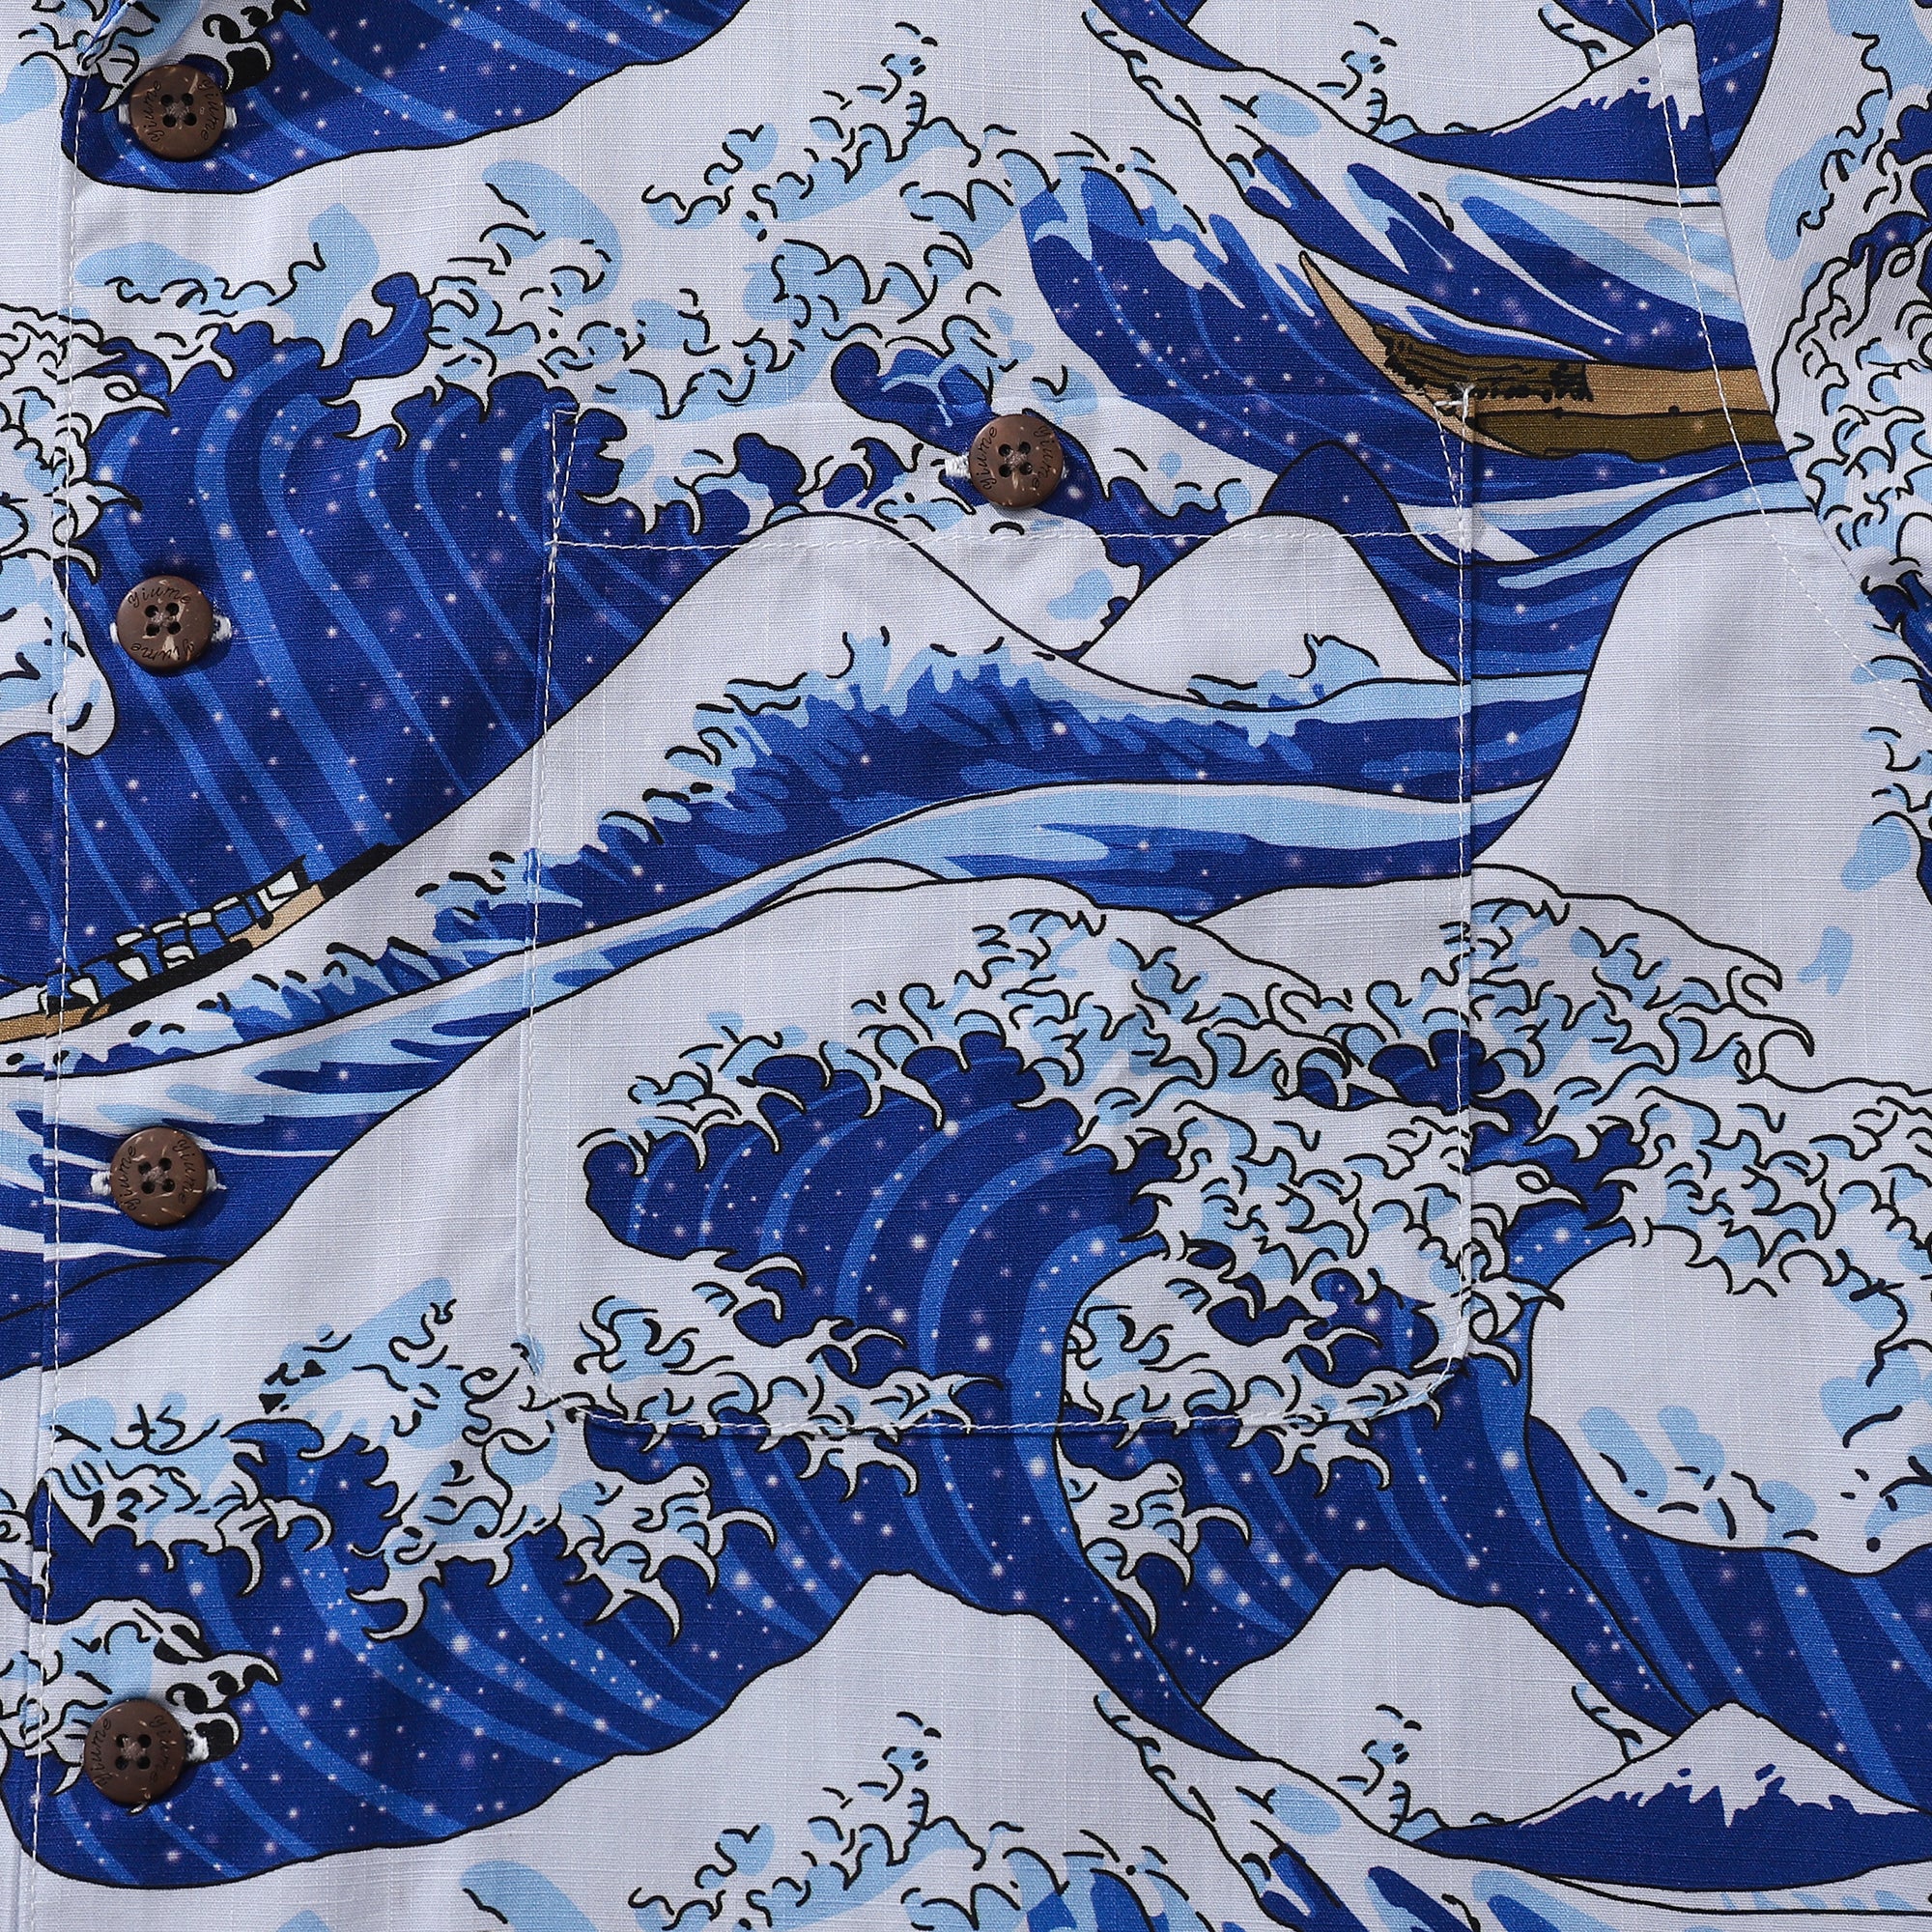 Camisa hawaiana para hombre, camisa con estampado japonés de olas del océano, cuello de campamento, 100% algodón